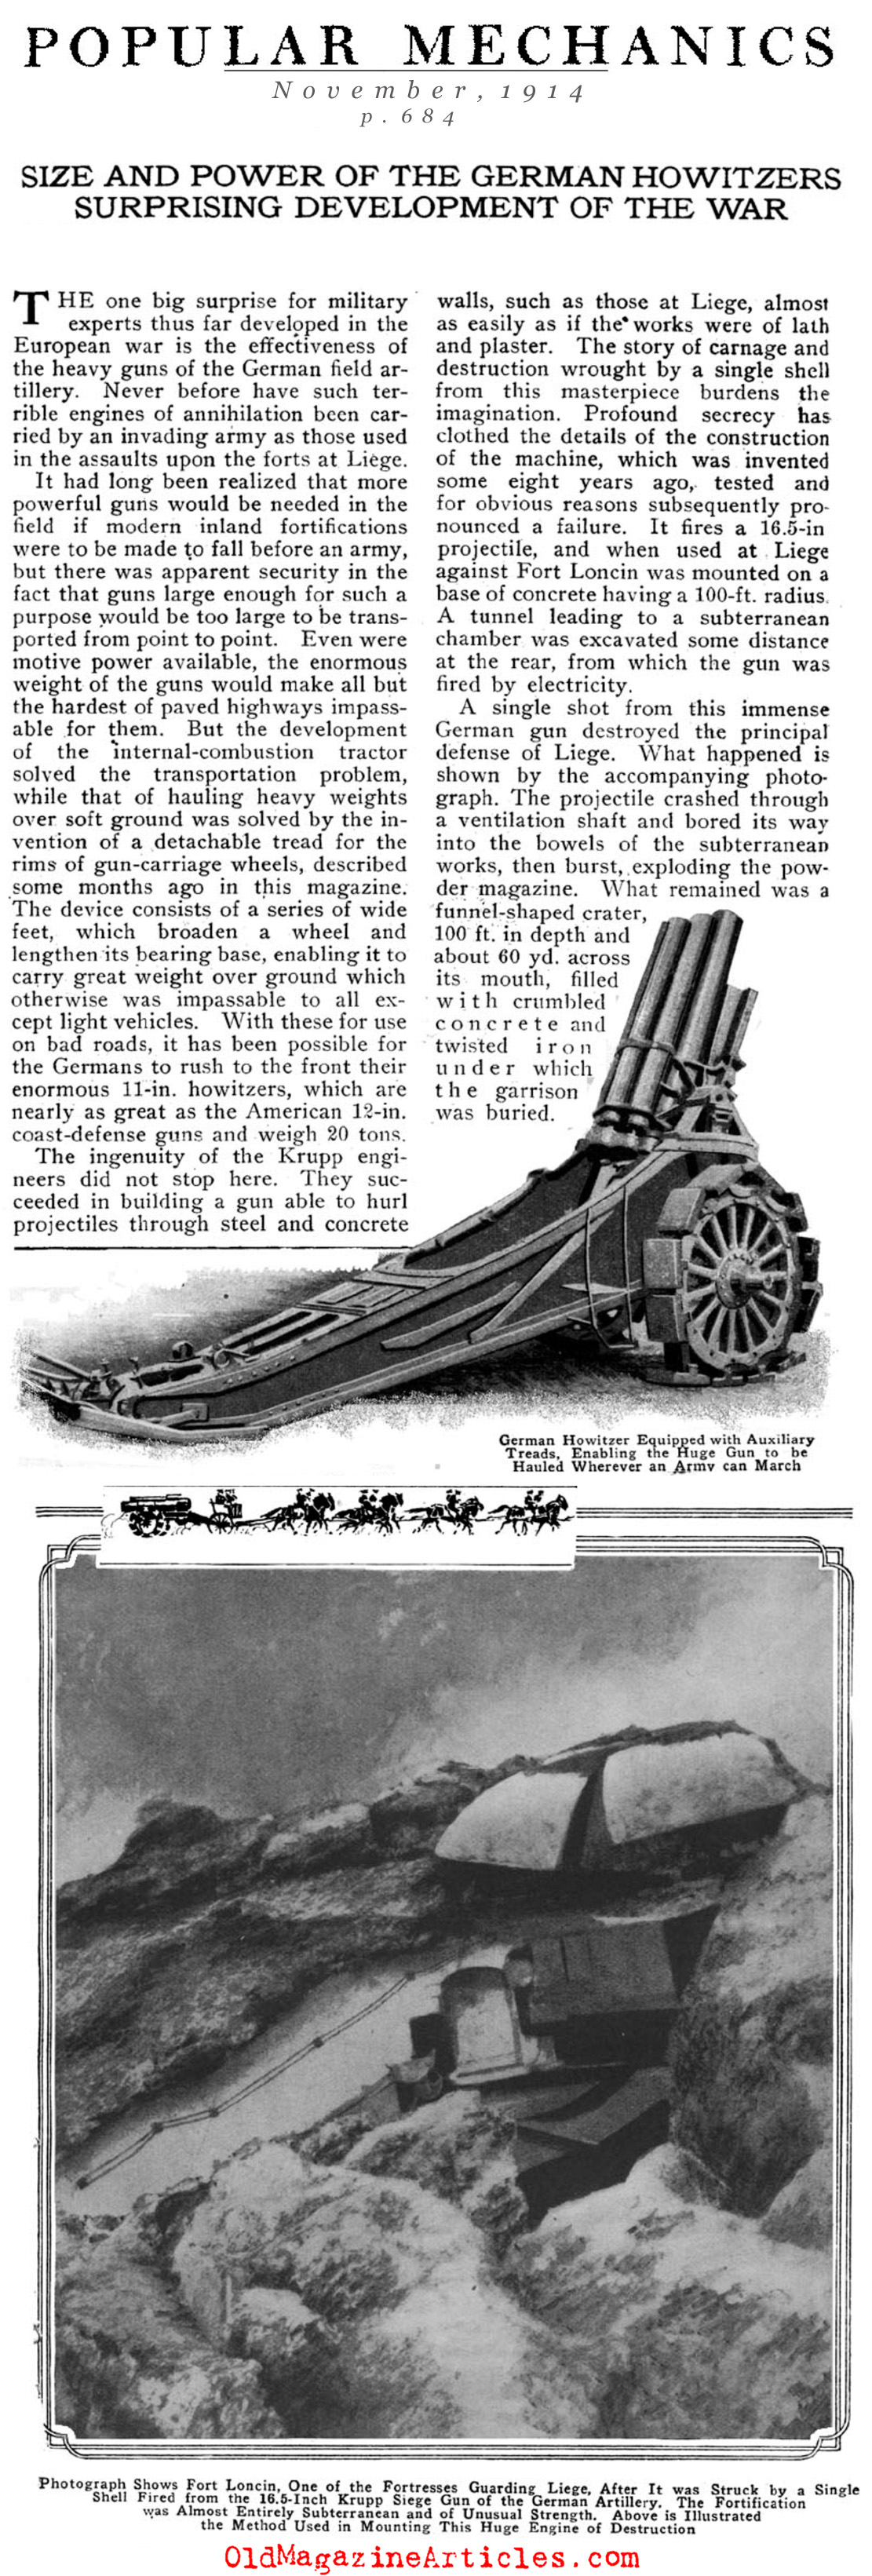 German Howitzers (Popular Mechanics, 1914)